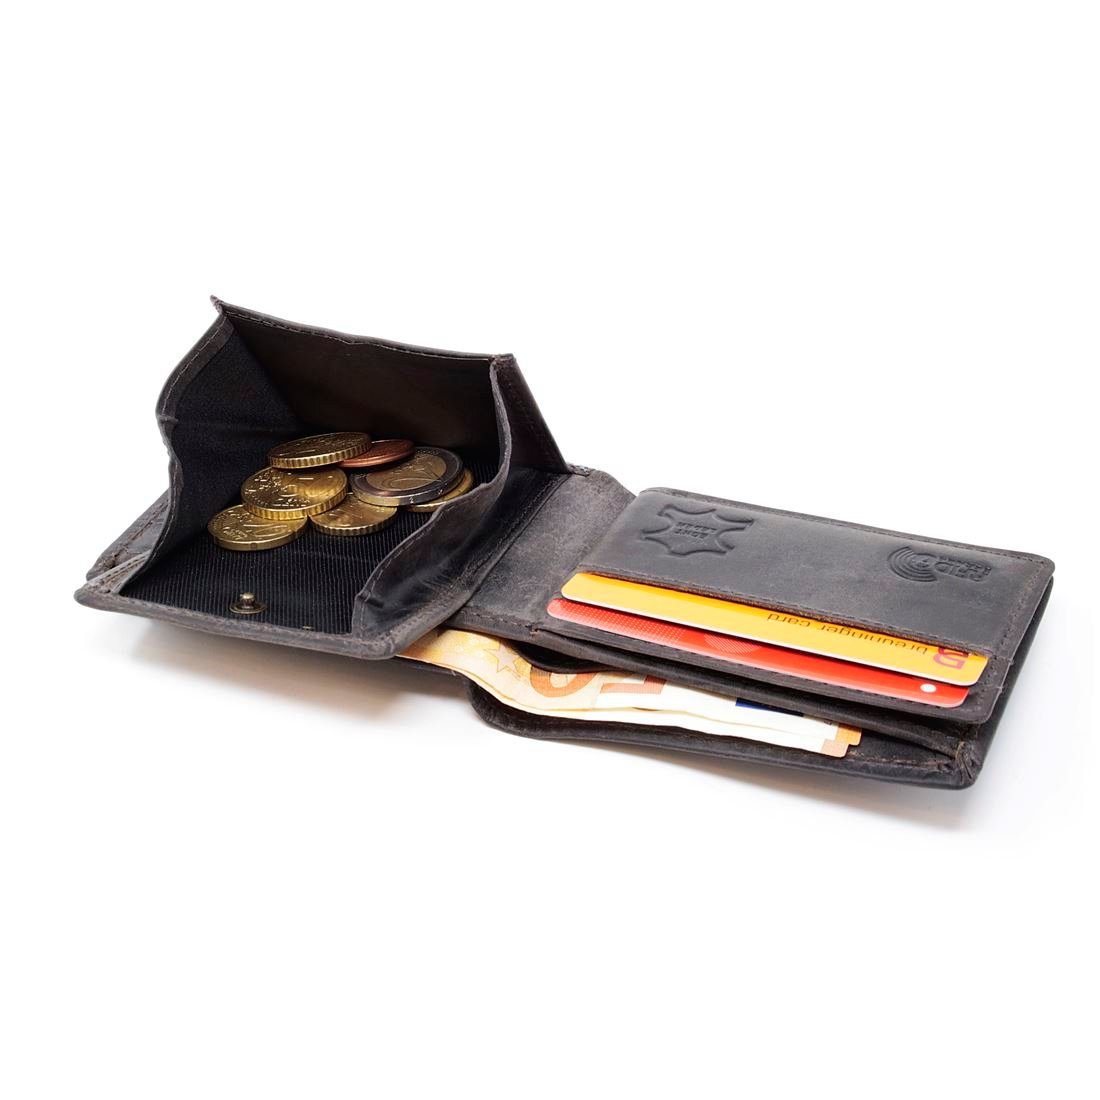 Männerbörse Geldbörse Münzfach Schutz mit SHG Lederbörse Portemonnaie, Herren Brieftasche Börse Leder RFID